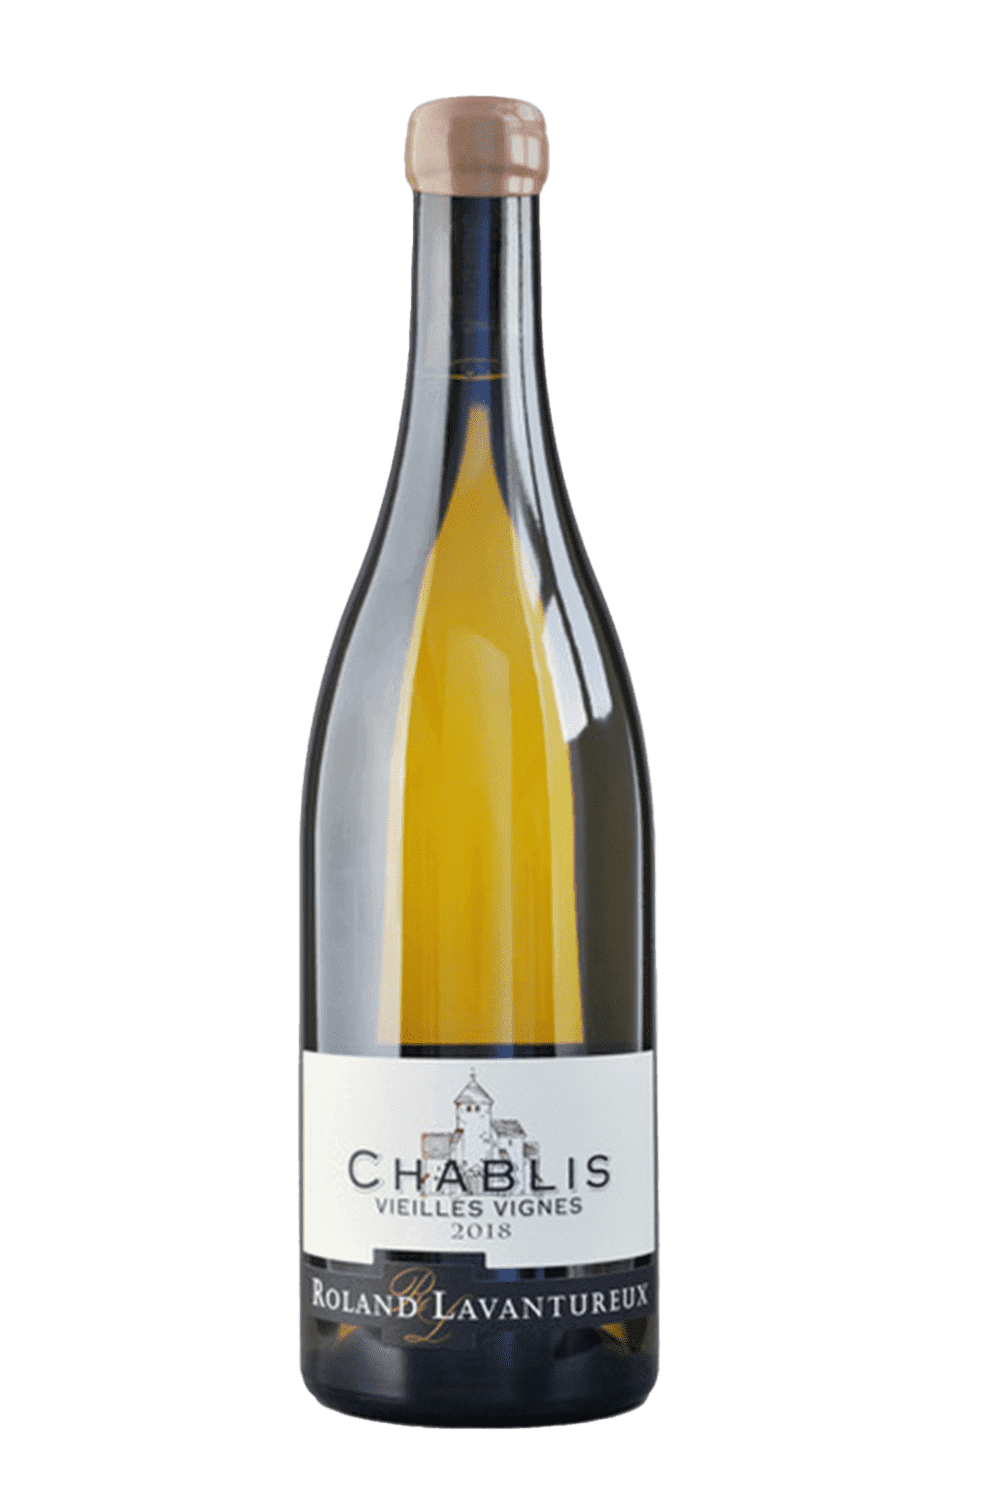 Bouteille de Chablis Vieilles Vignes 2018 - Domaine Roland Lavantureux